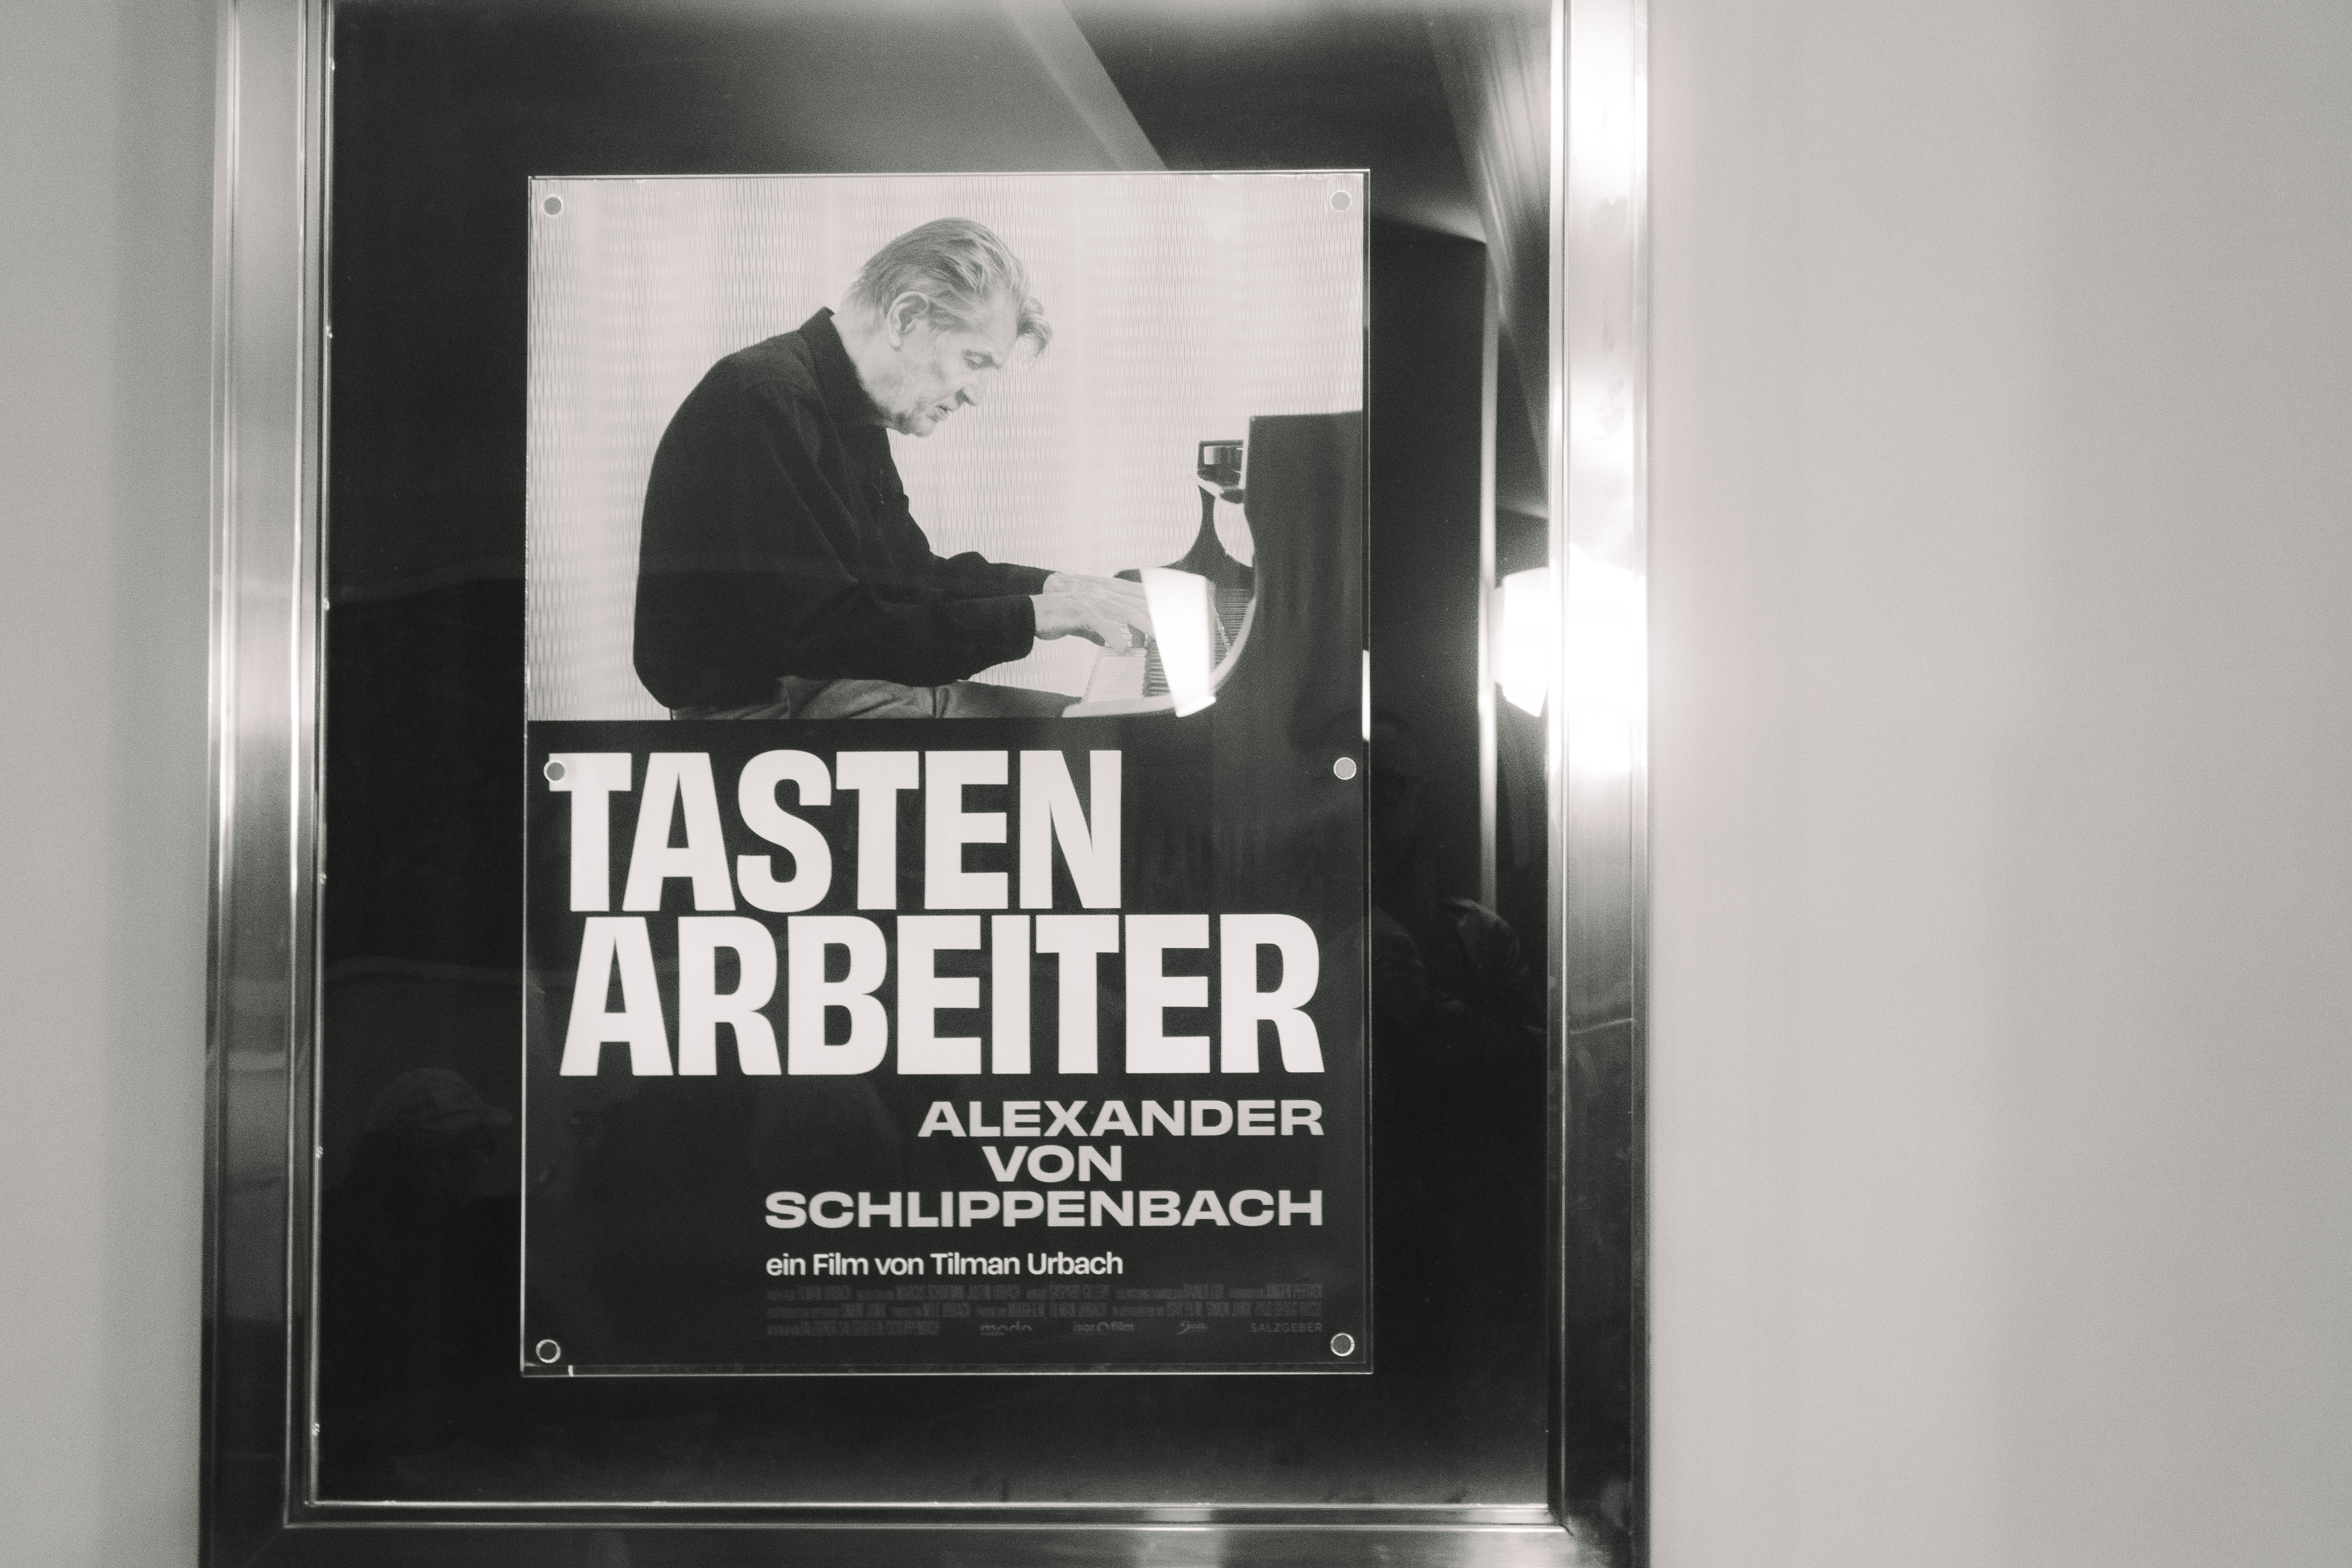 Tastenarbeiter - Alexander von Schlippenbach